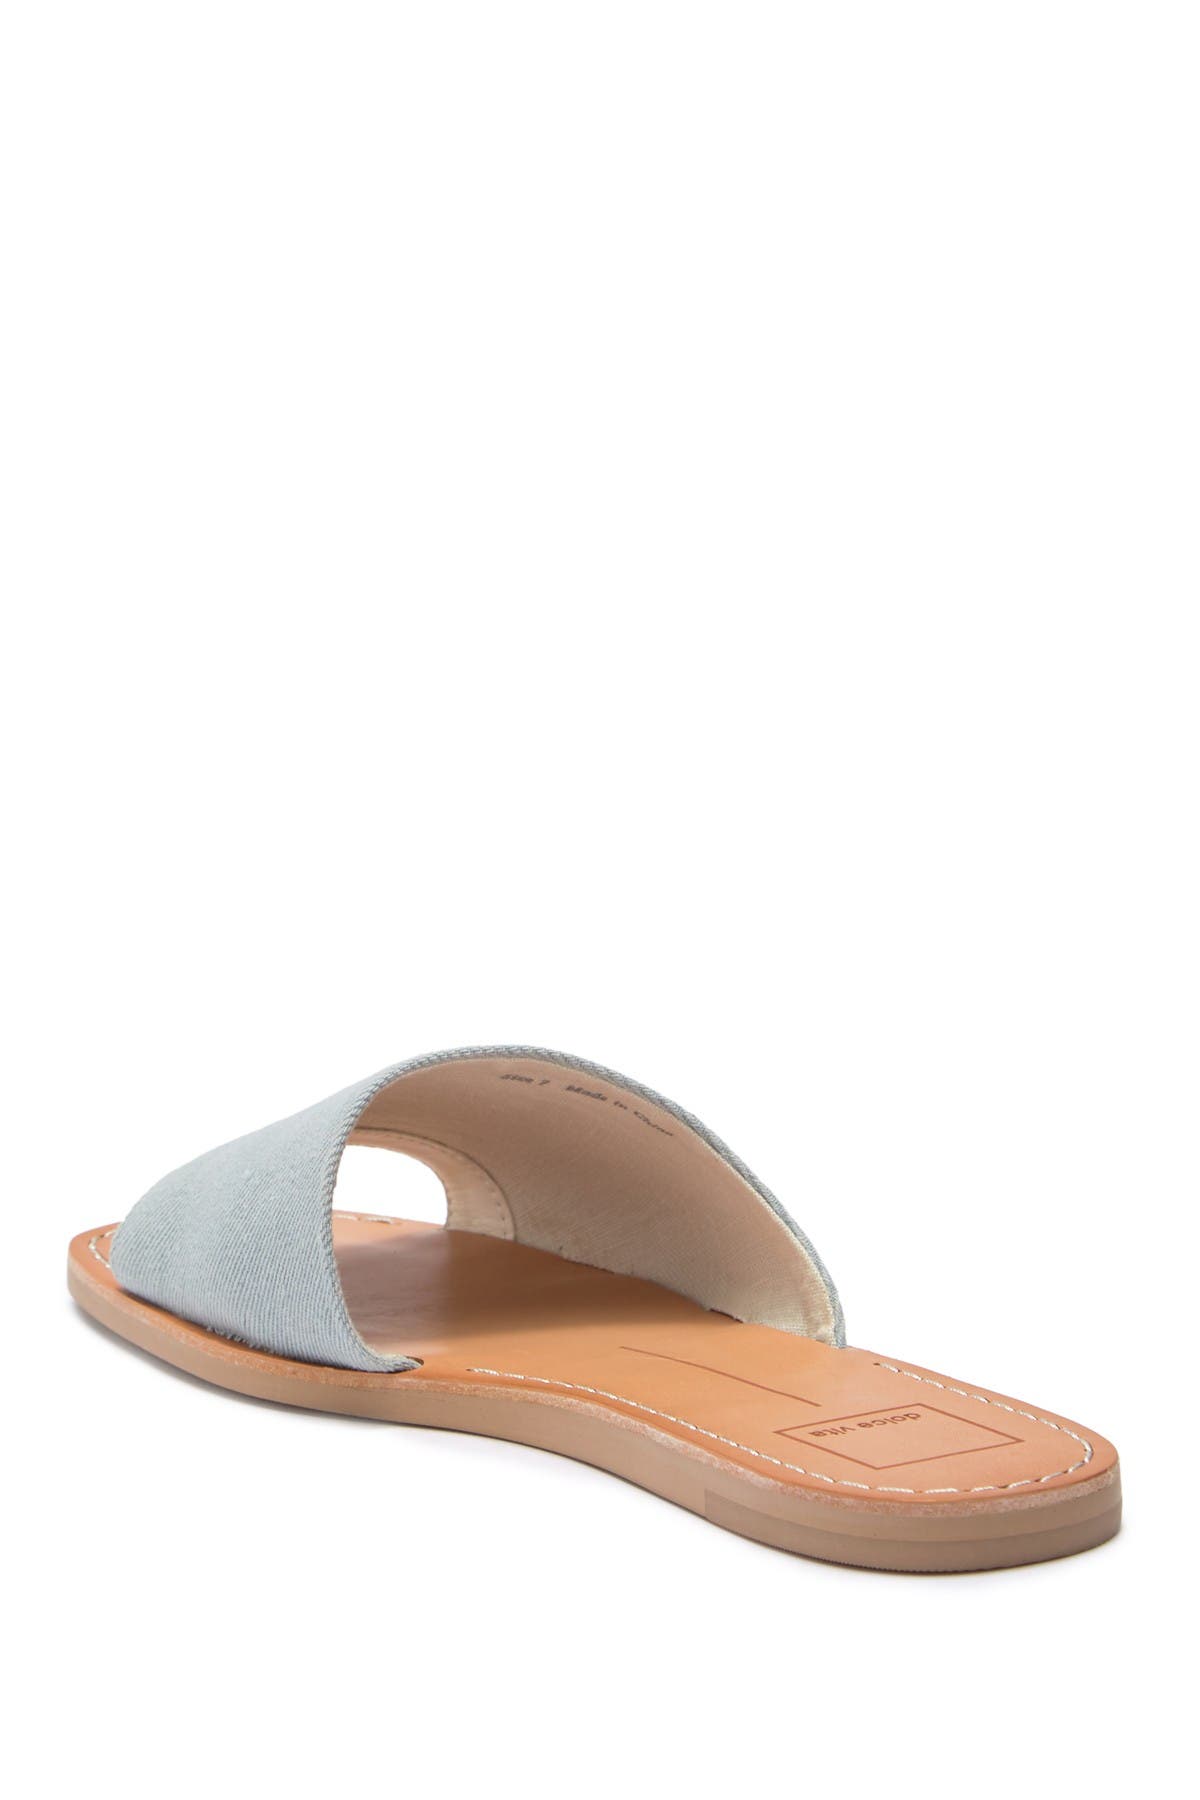 dolce vita cato asymmetrical slide sandal